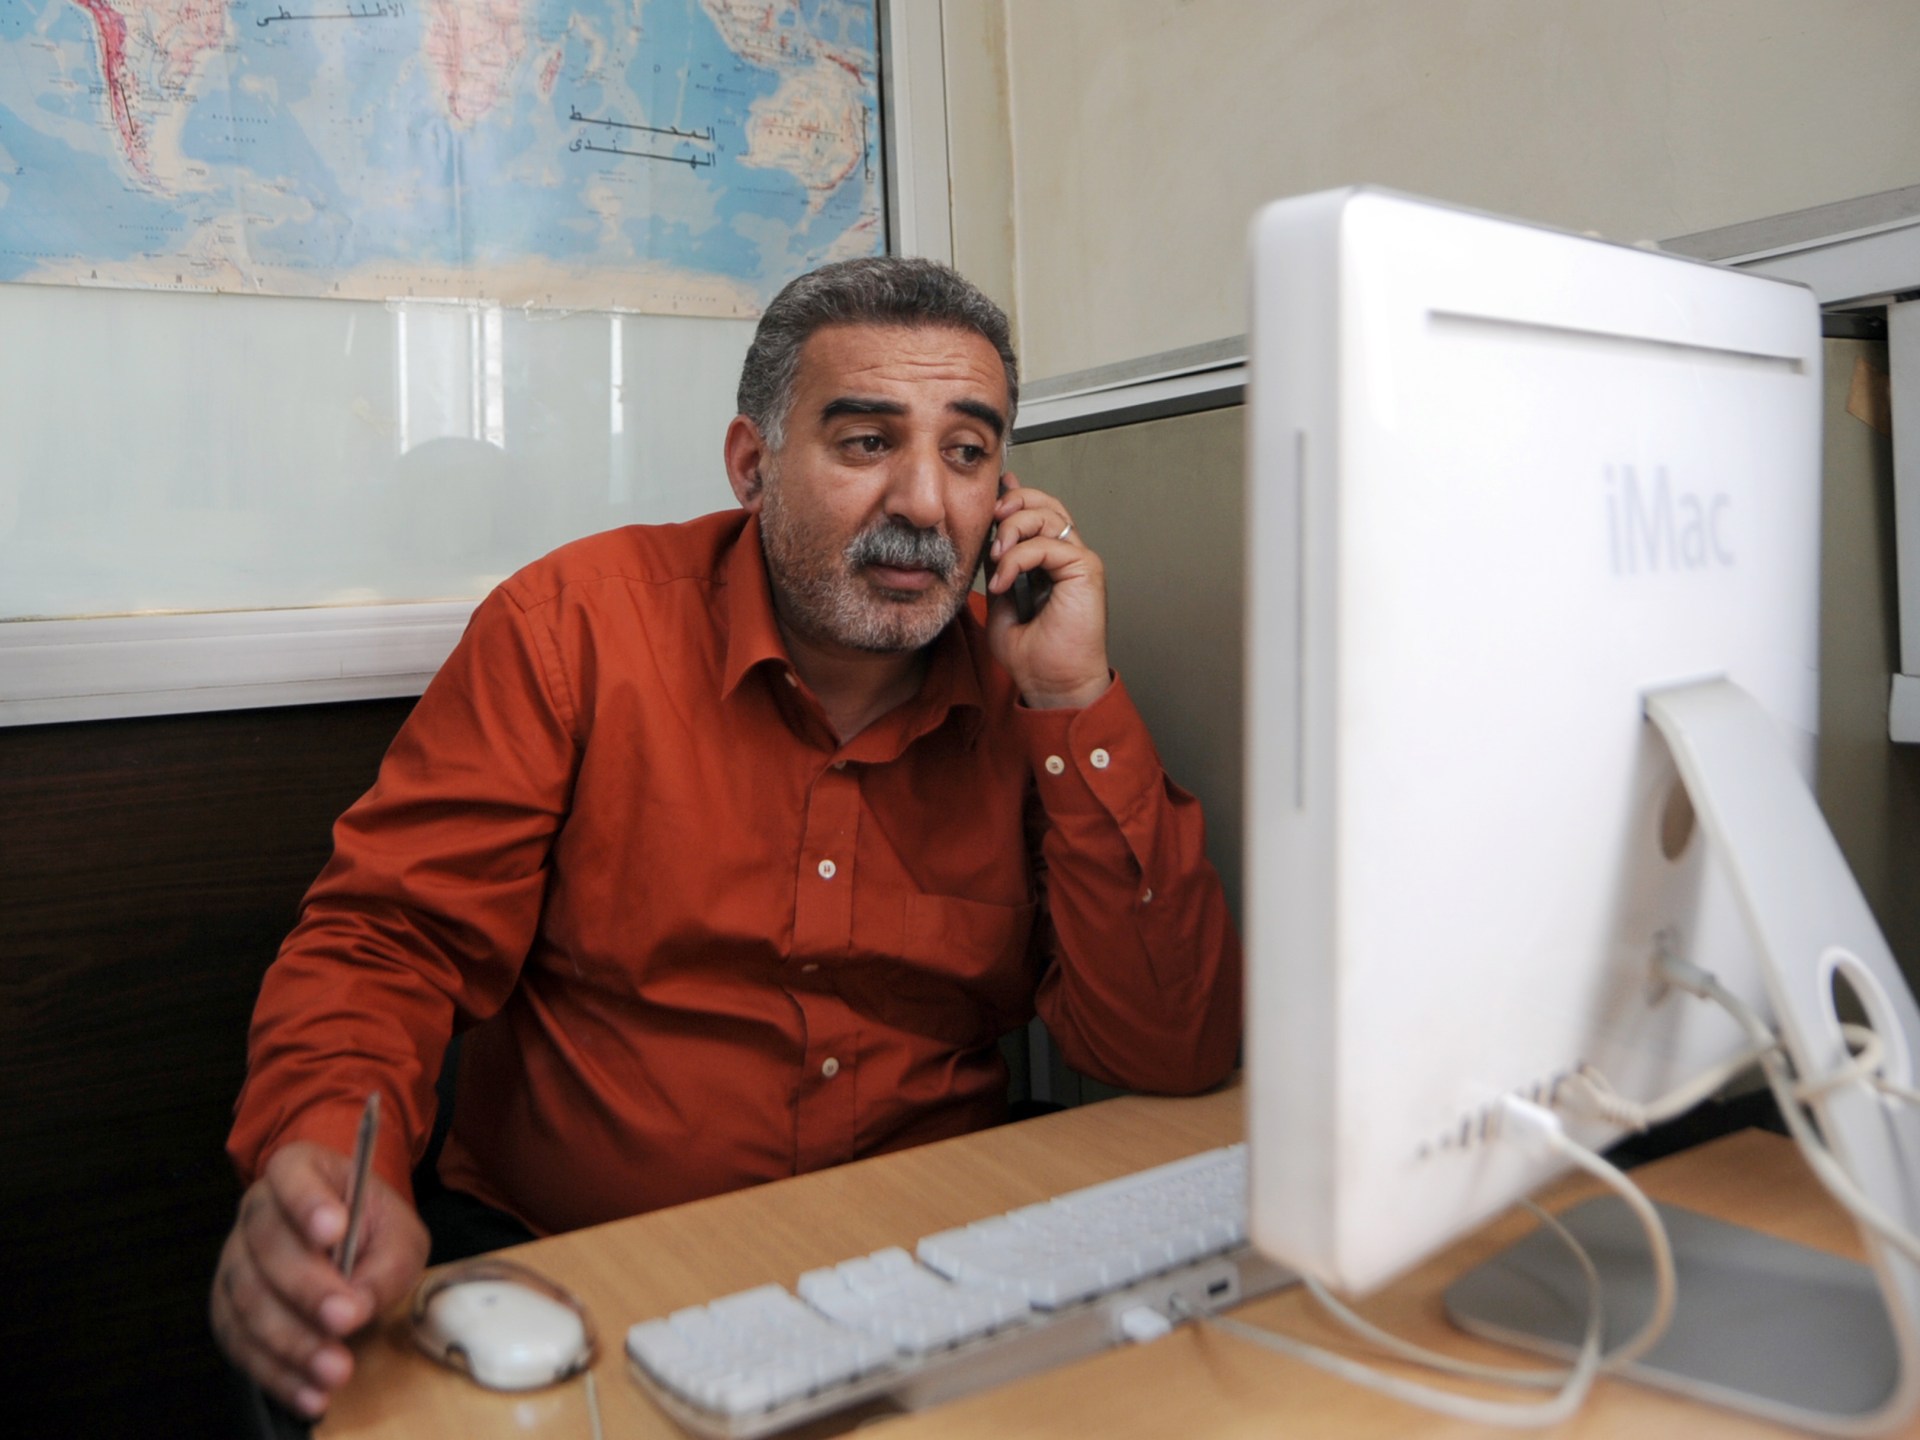 Wartawan radio terkemuka Zied el-Heni ditangkap di Tunisia |  Berita Hak Asasi Manusia